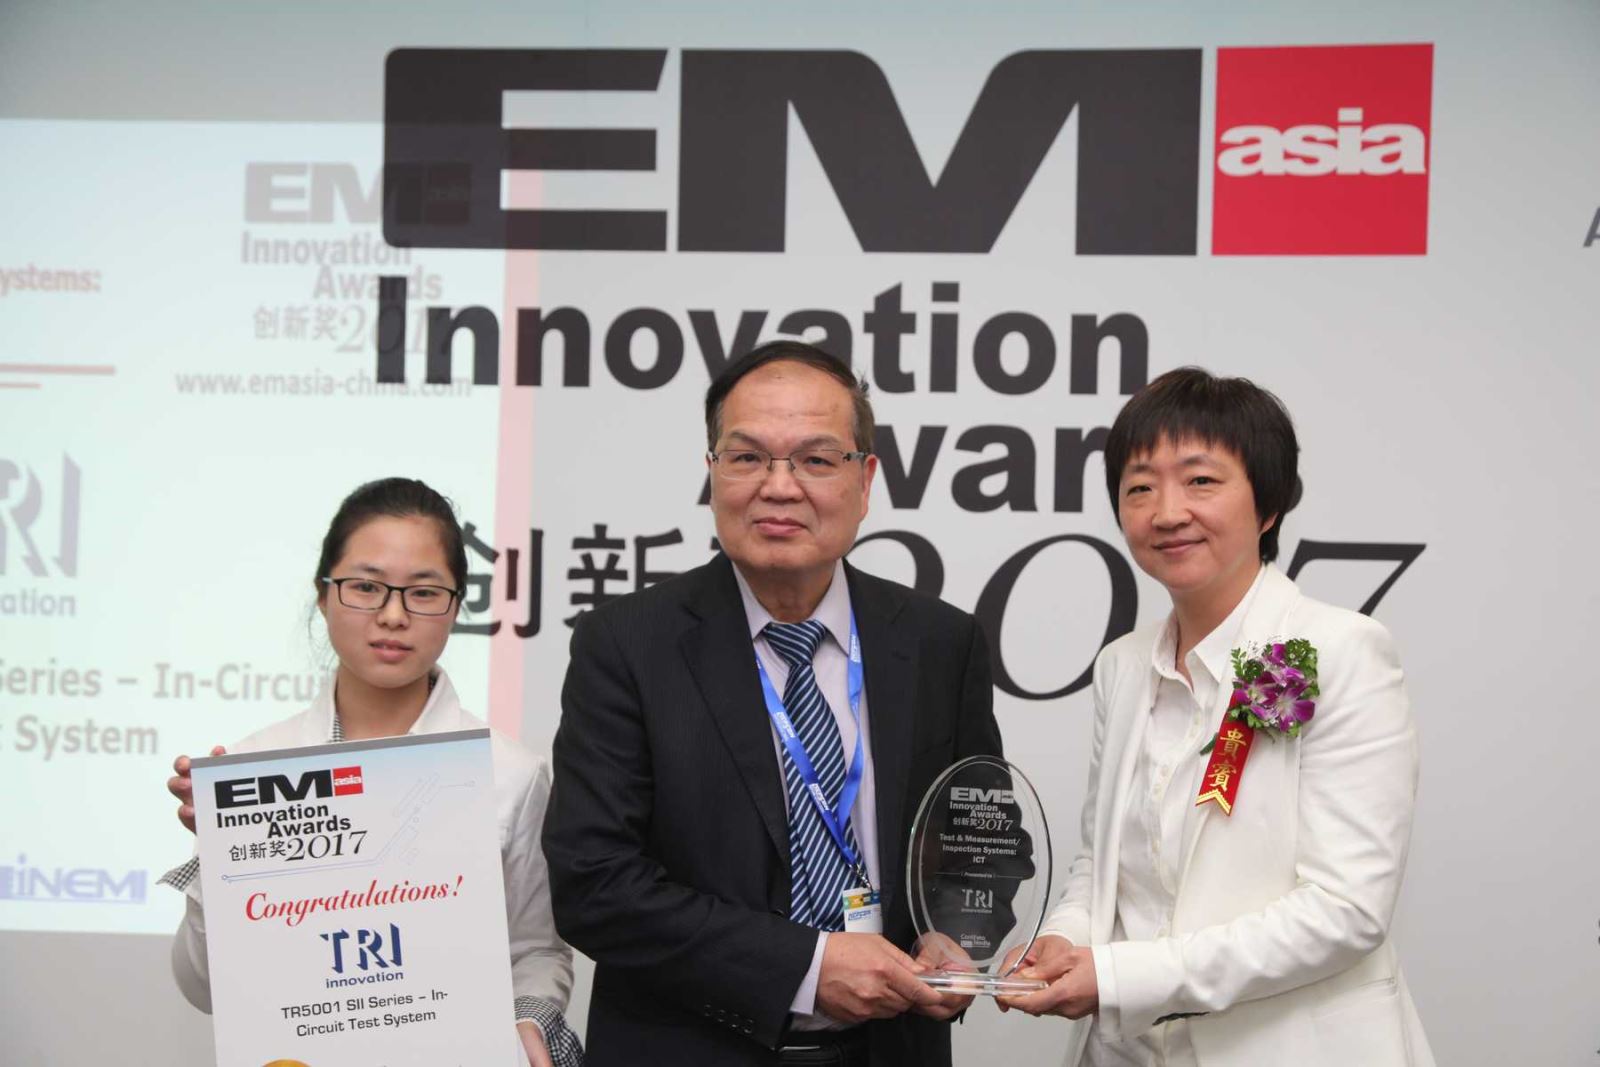 TRI EM Asia Innovation Awards Ceremony Photo